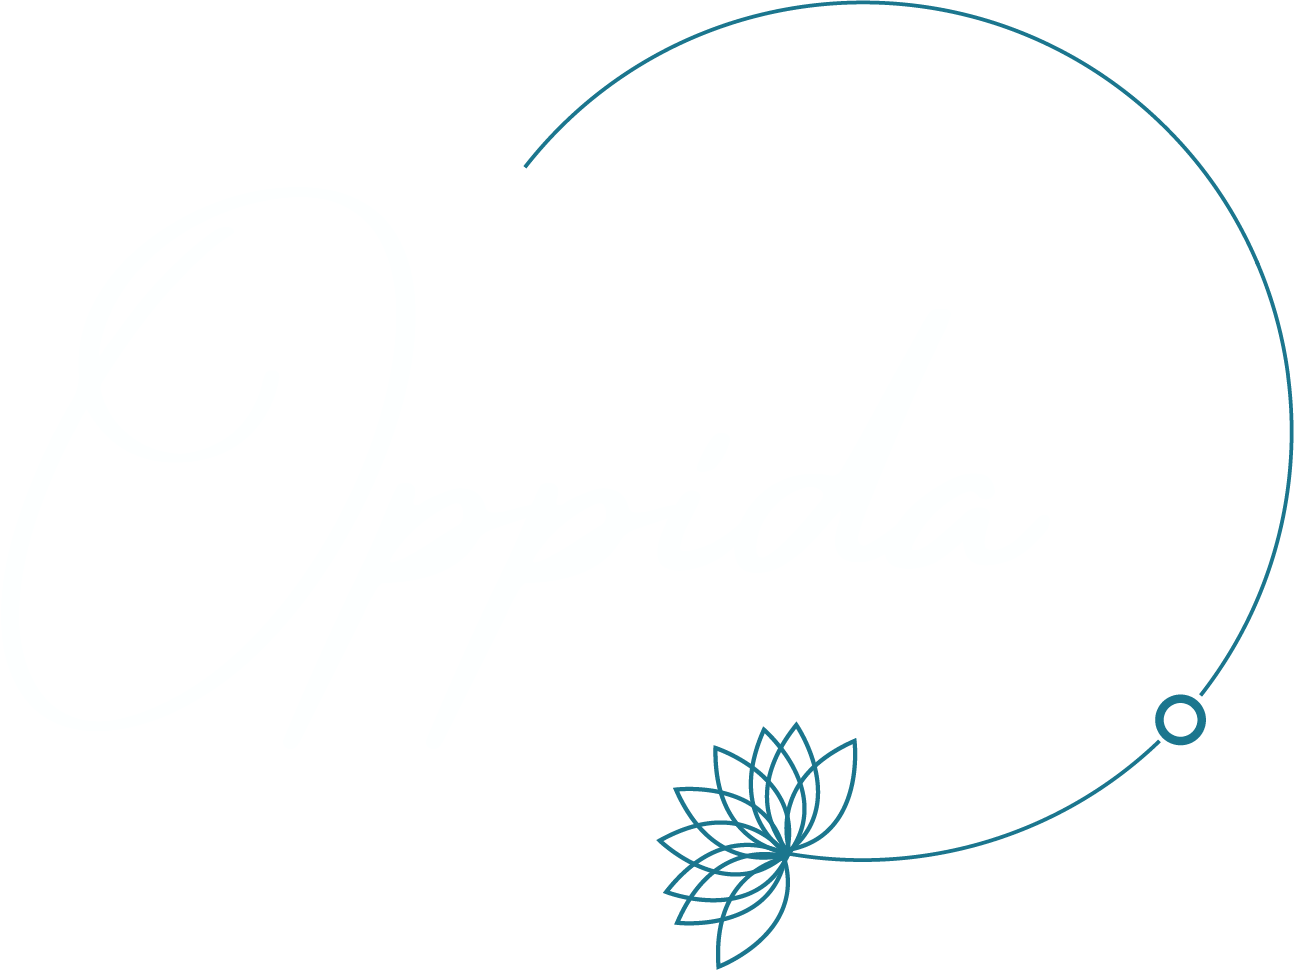 OPPIDA communication